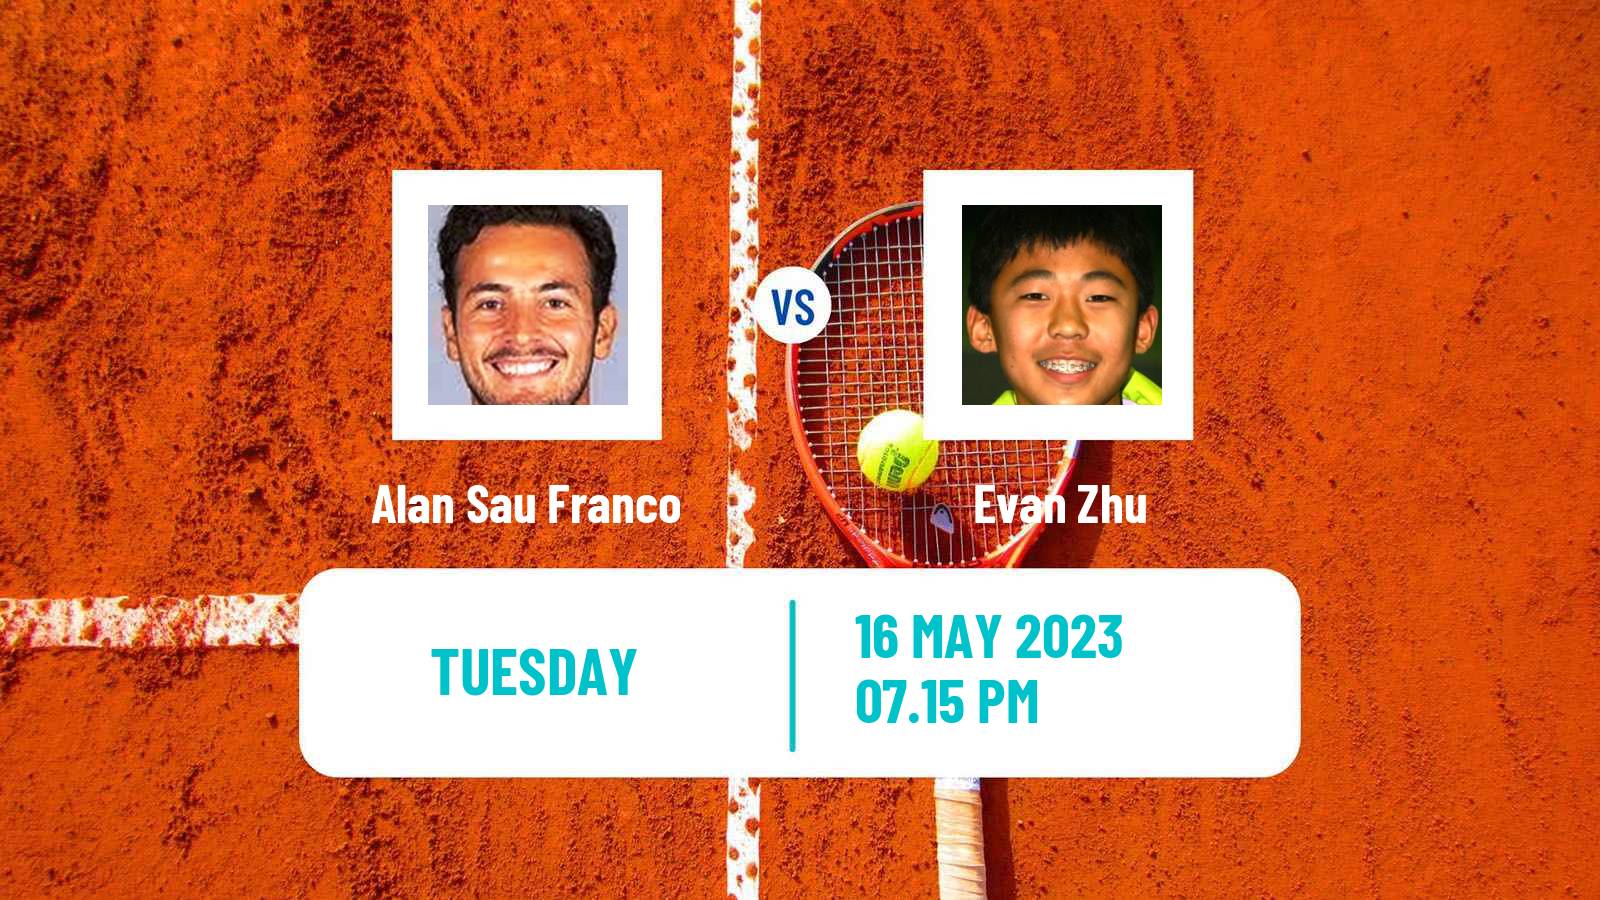 Tennis ITF M25 Xalapa Men Alan Sau Franco - Evan Zhu